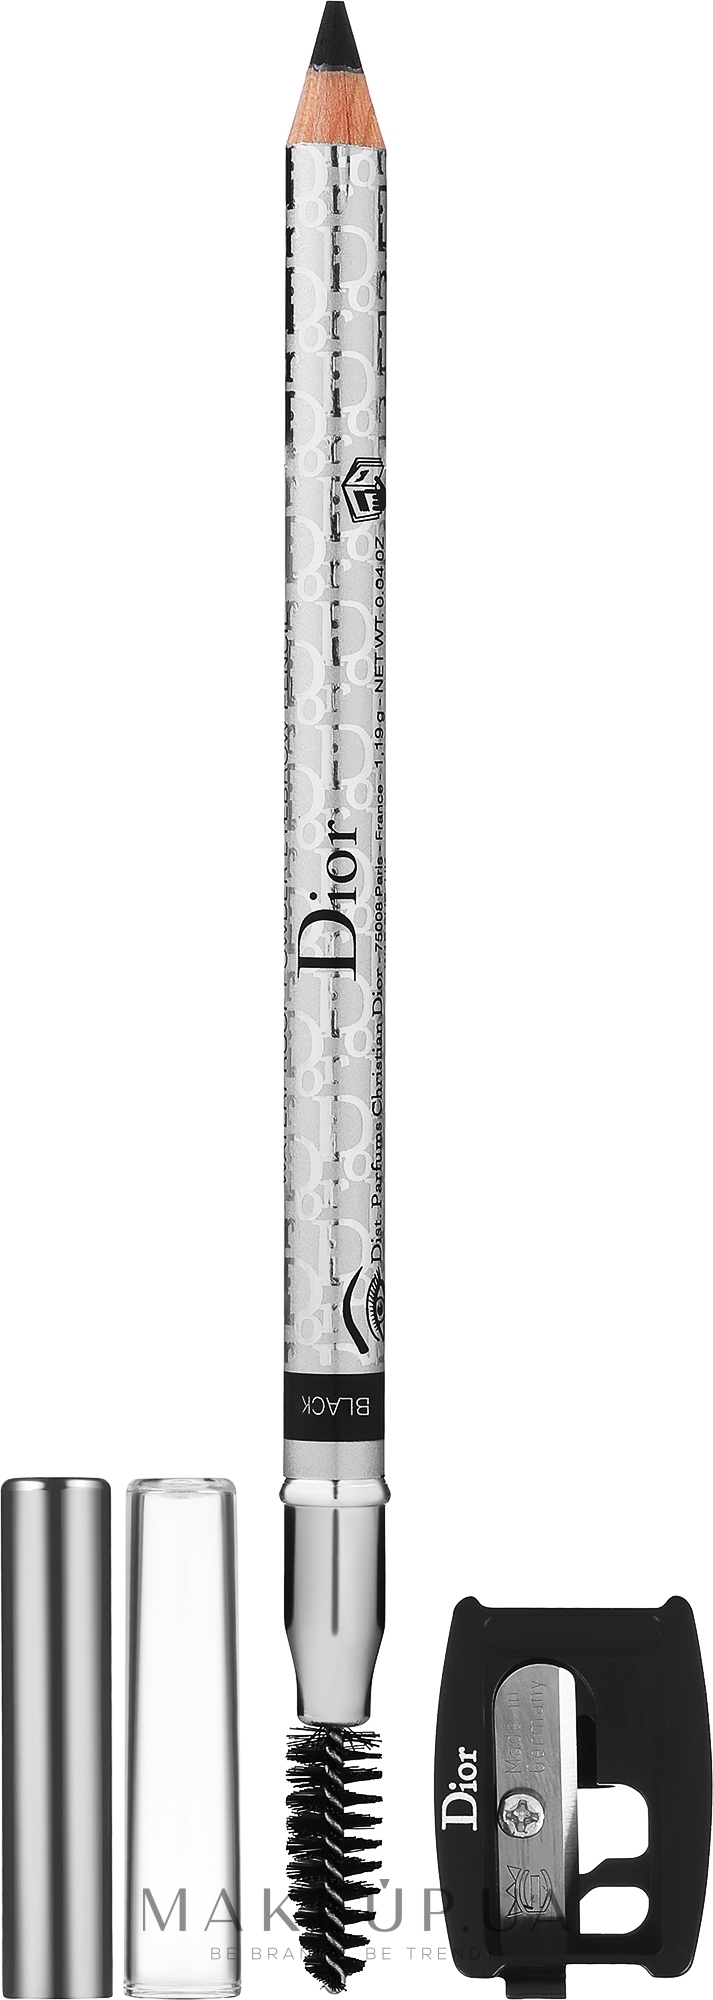 Карандаш для бровей - Dior Diorshow Crayon Sourcils Poudre (с точилкой) — фото 05 - Black